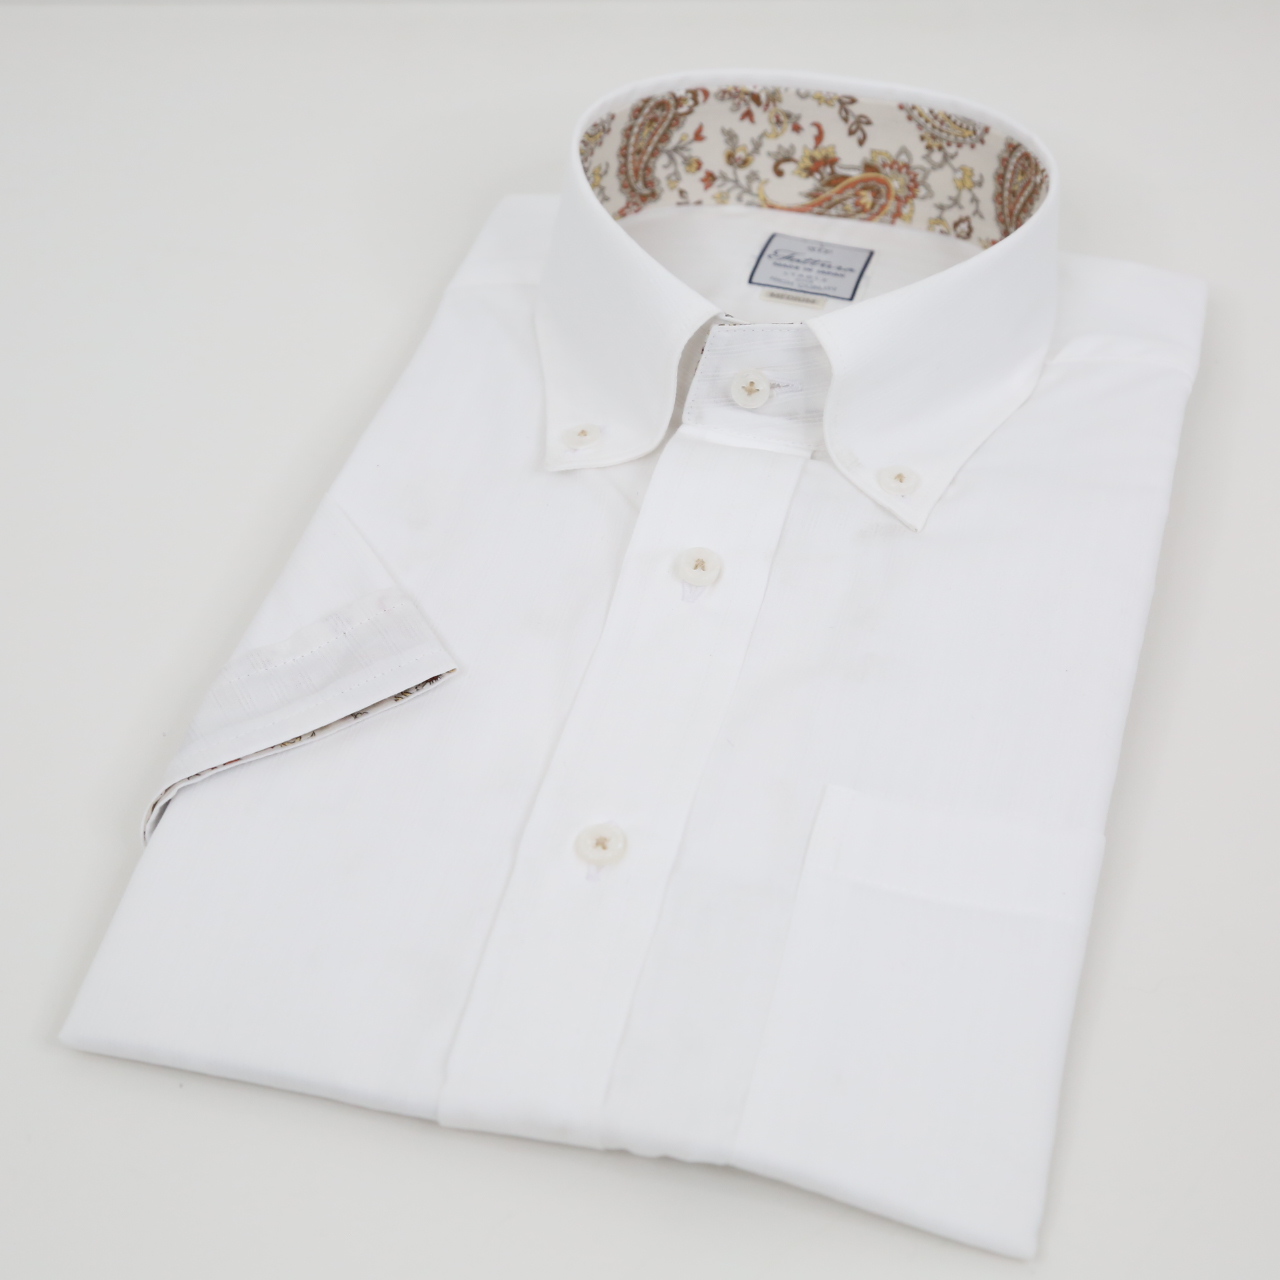 半袖シャツ  レギュラーサイズ  形態安定  ボタンダウン  シングルボタン  ホワイト  日本製